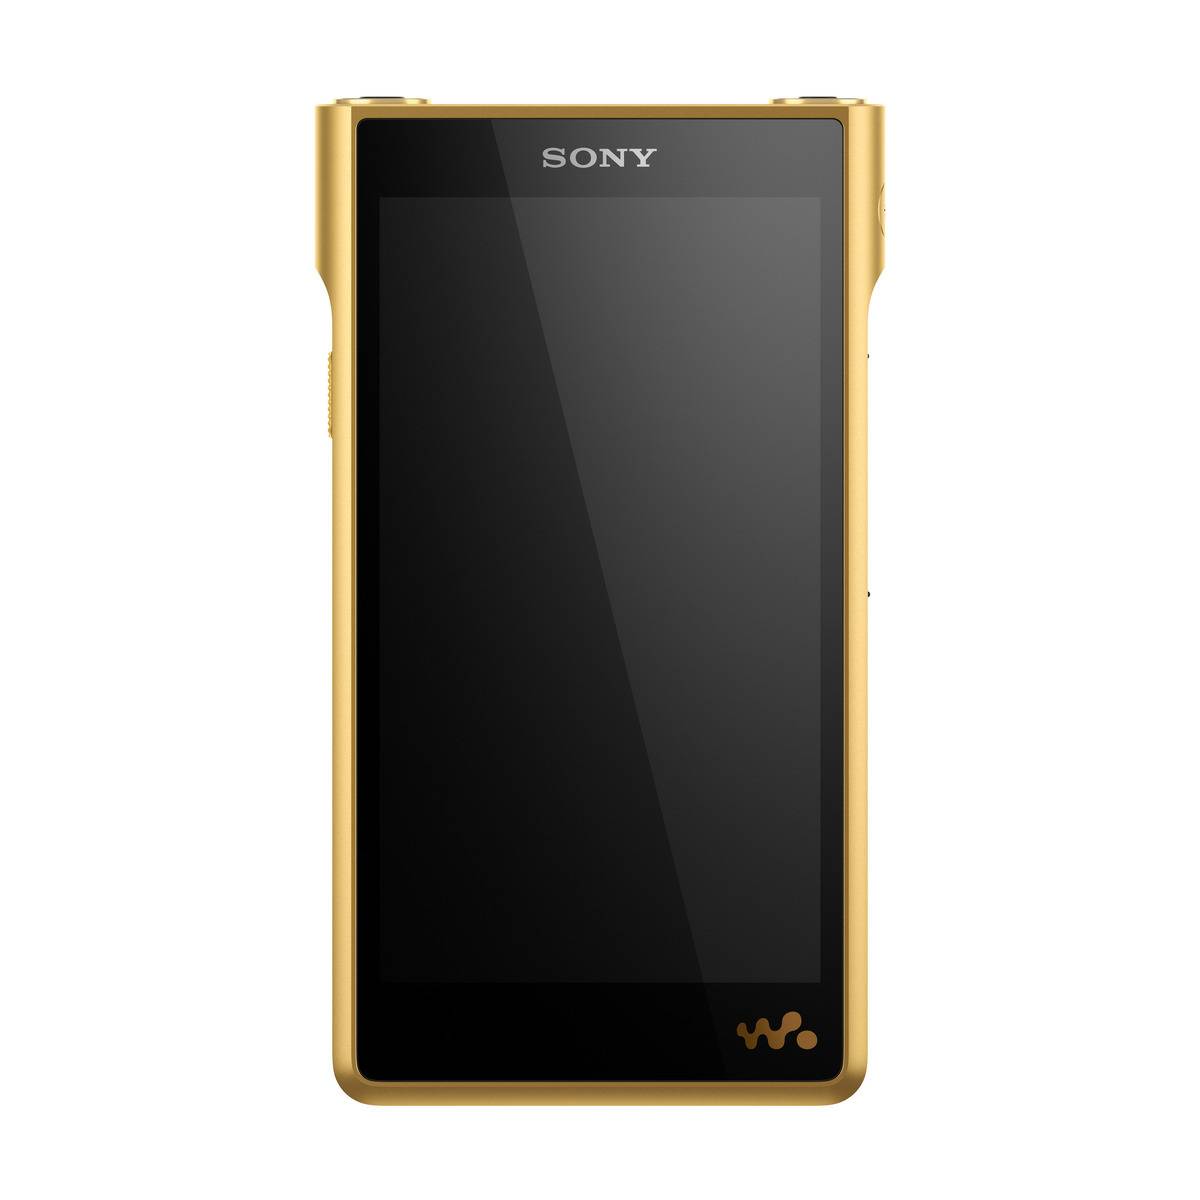 Sony NW-WM1ZM2 Signature Series Walkman